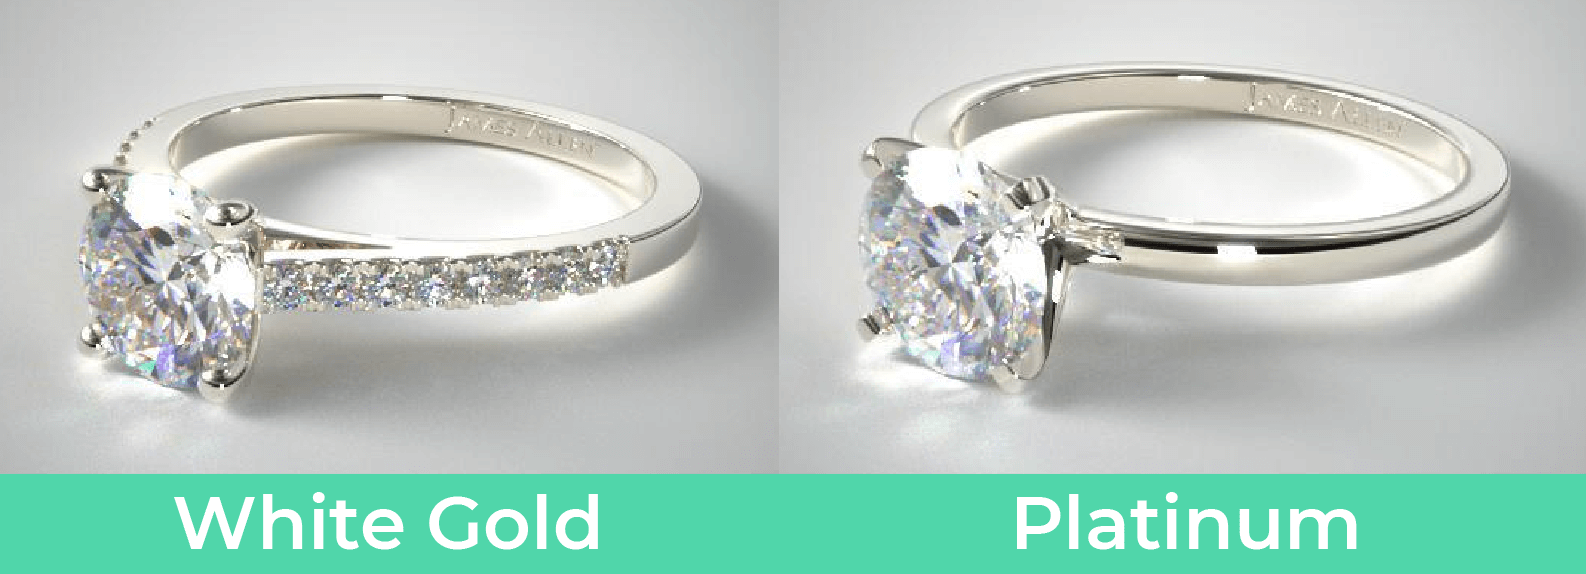 Platinum vs. white gold